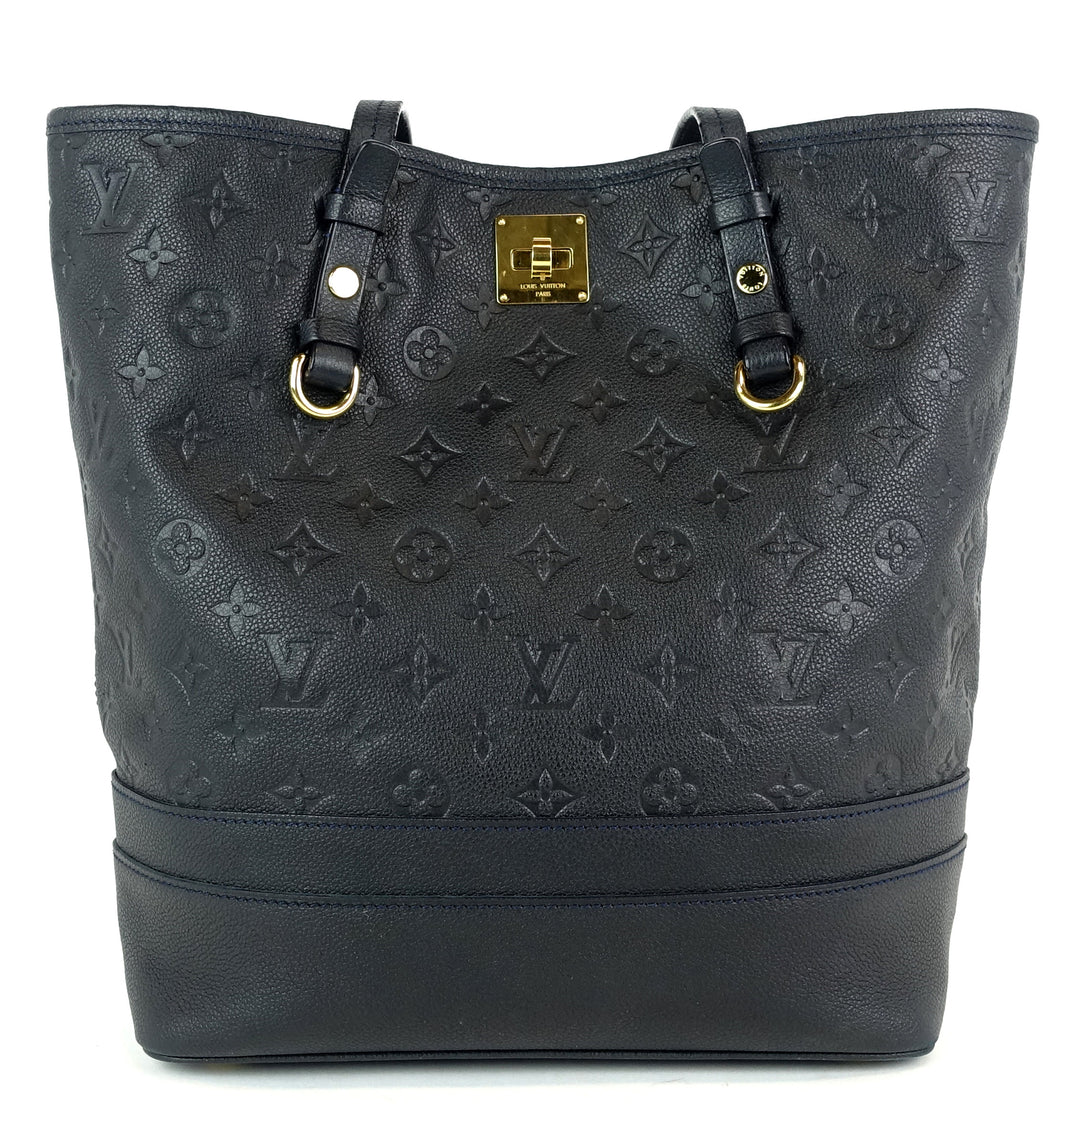 Authentic Louis Vuitton LV Citadine PM Monogram Empreinte Leather